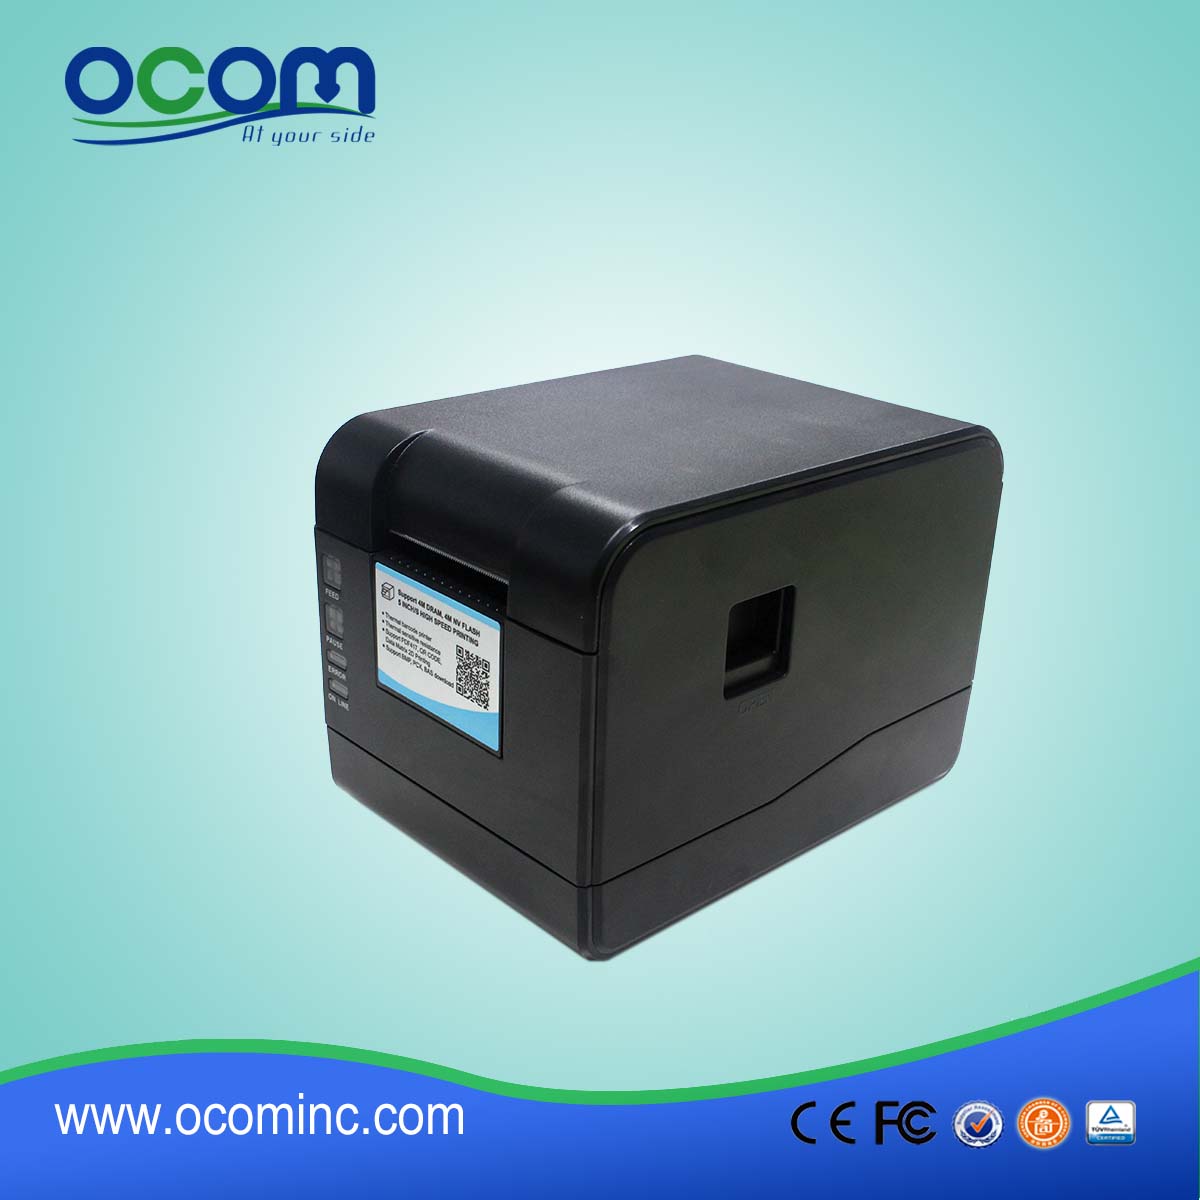 OCBP-006 2" Direct thermal barcode label printer